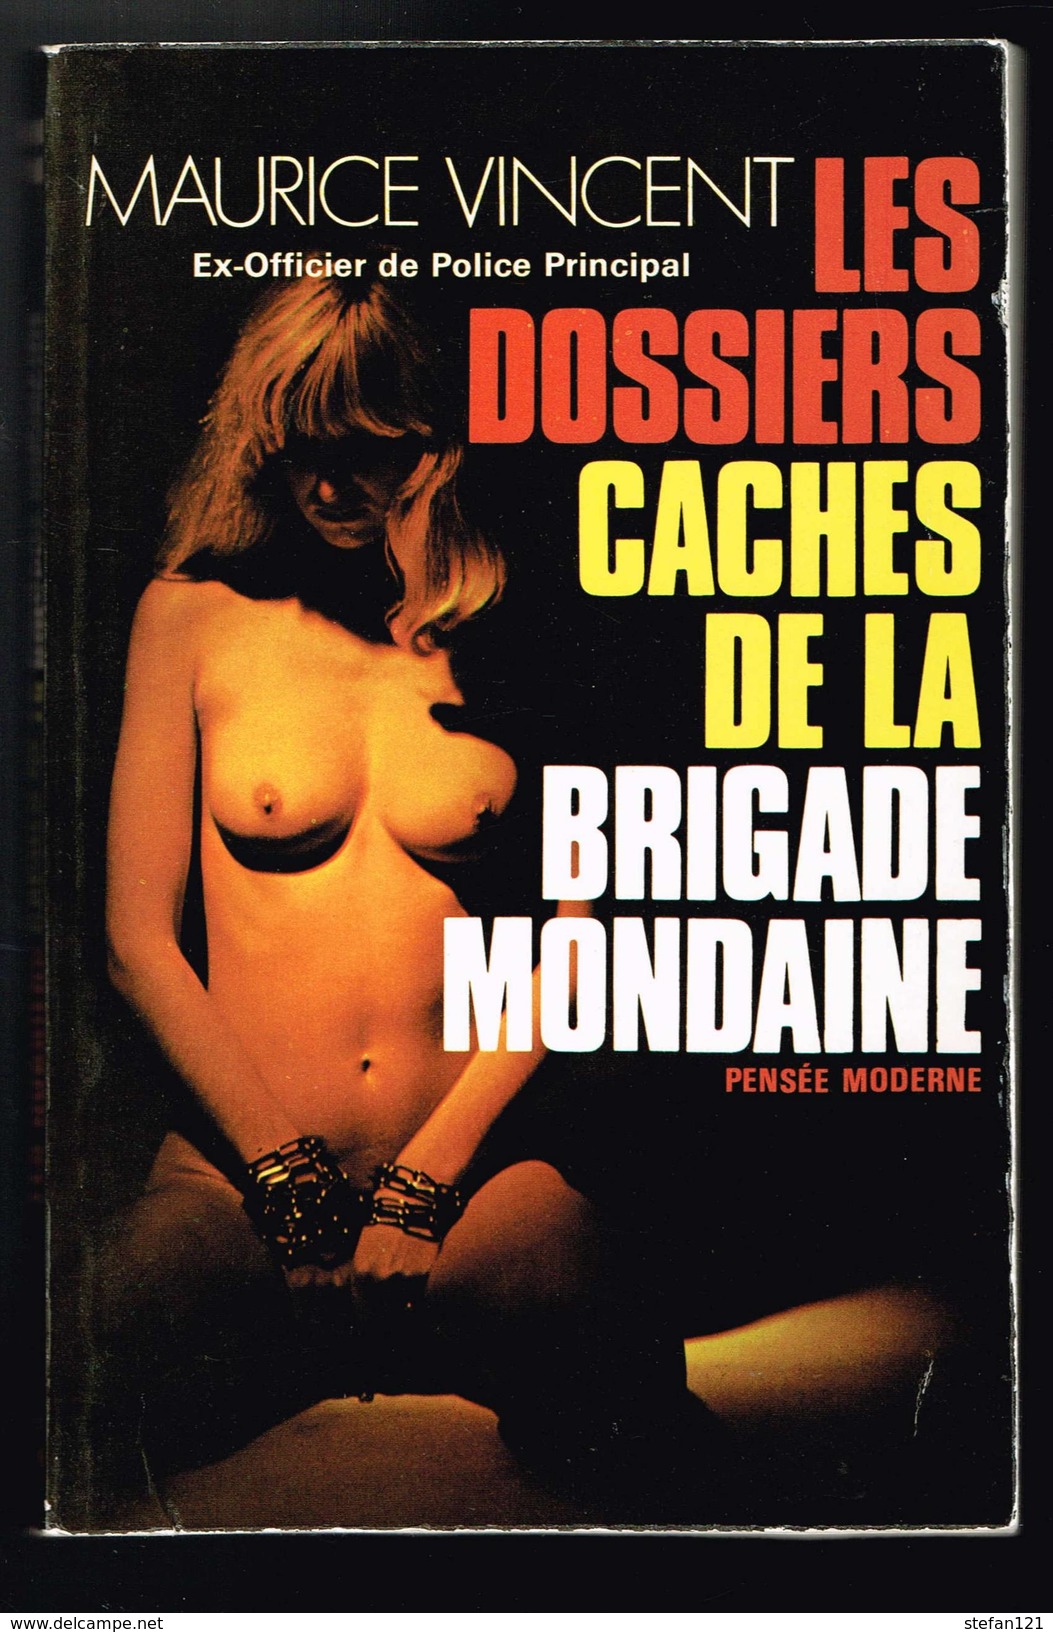 Les Dossiers Cachés De La Brigade Mondaine - Maurice Vincent - 1975 - 286 Pages 20 X 13 Cm - History